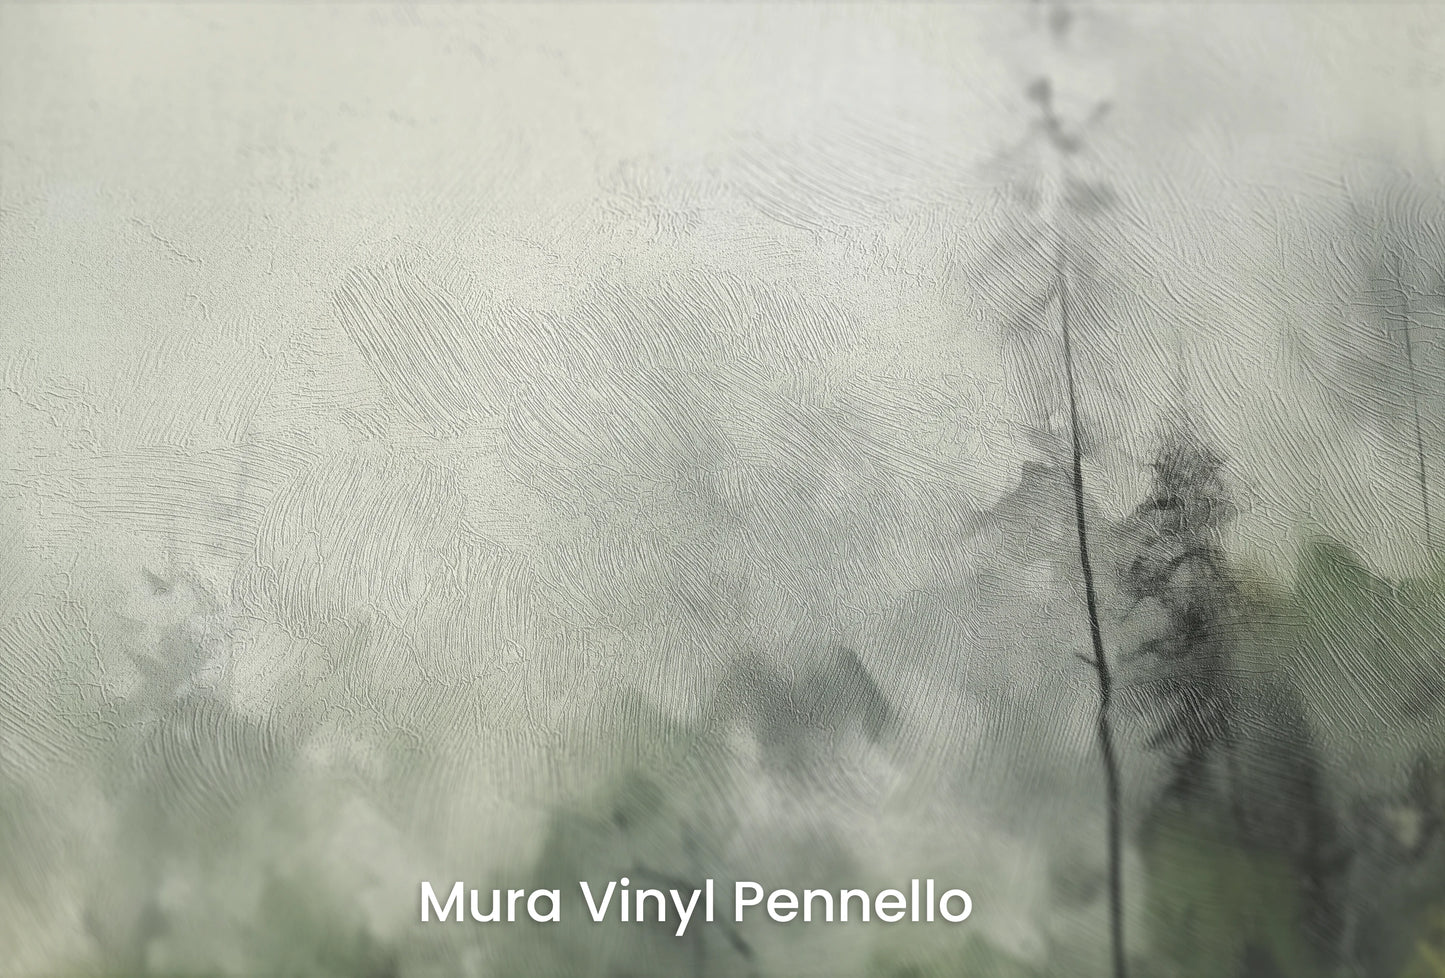 Zbliżenie na artystyczną fototapetę o nazwie Leśna Melancholia na podłożu Mura Vinyl Pennello - faktura pociągnięć pędzla malarskiego.